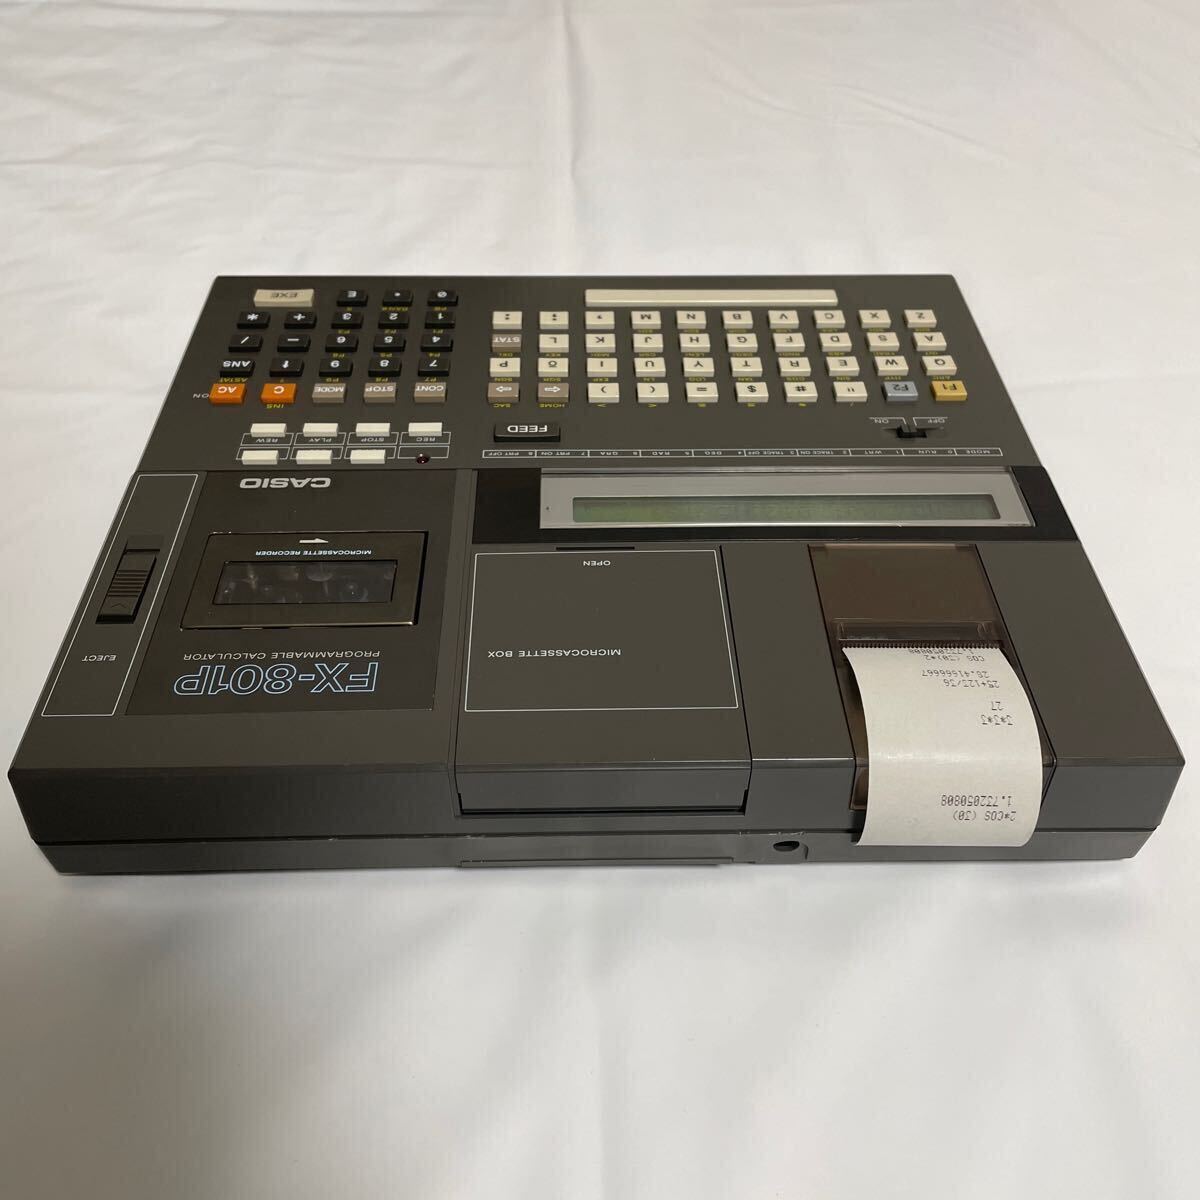 CASIO fx-801P карманный компьютер program программируемый калькулятор оригинальная коробка, кассета имеется 